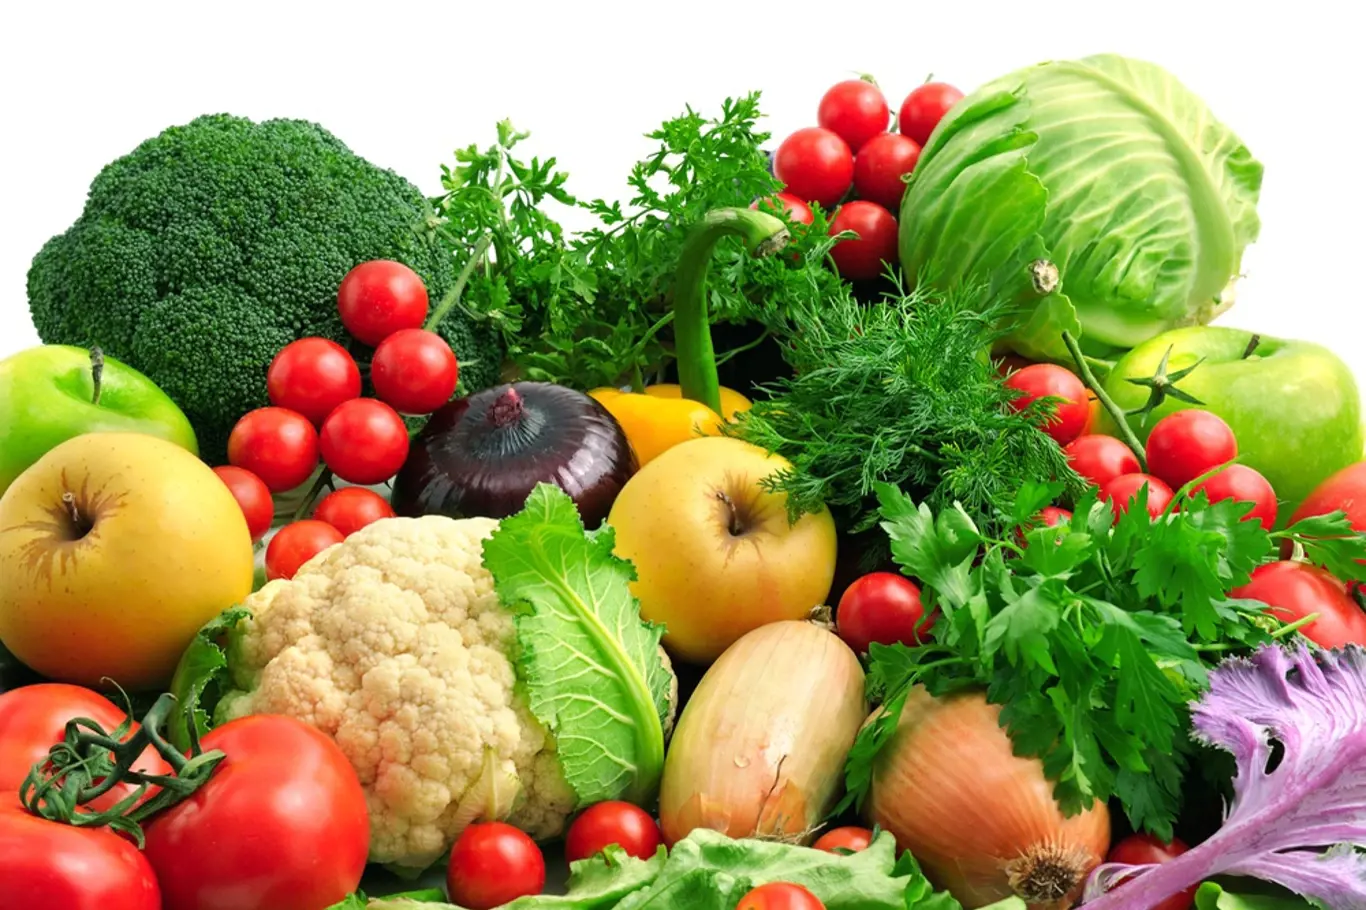 Čerstvé ovoce a zelenina jsou pro odlehčovací kúry ideální.